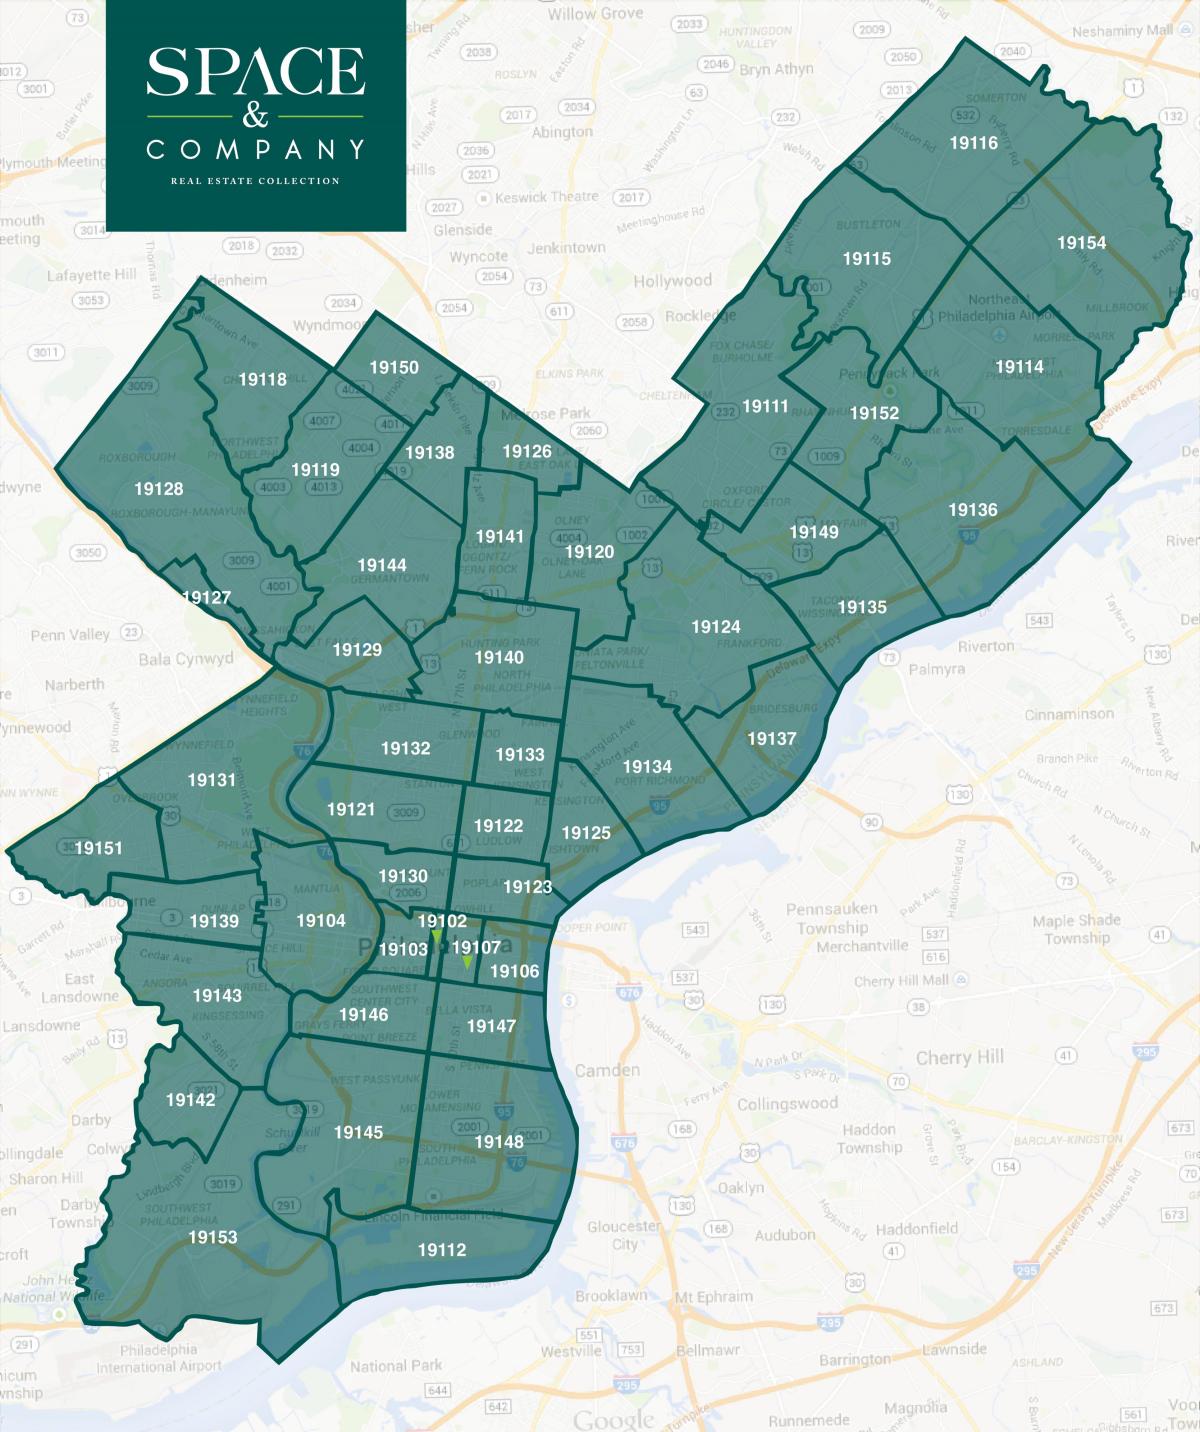 código postal de Filadelfia mapa